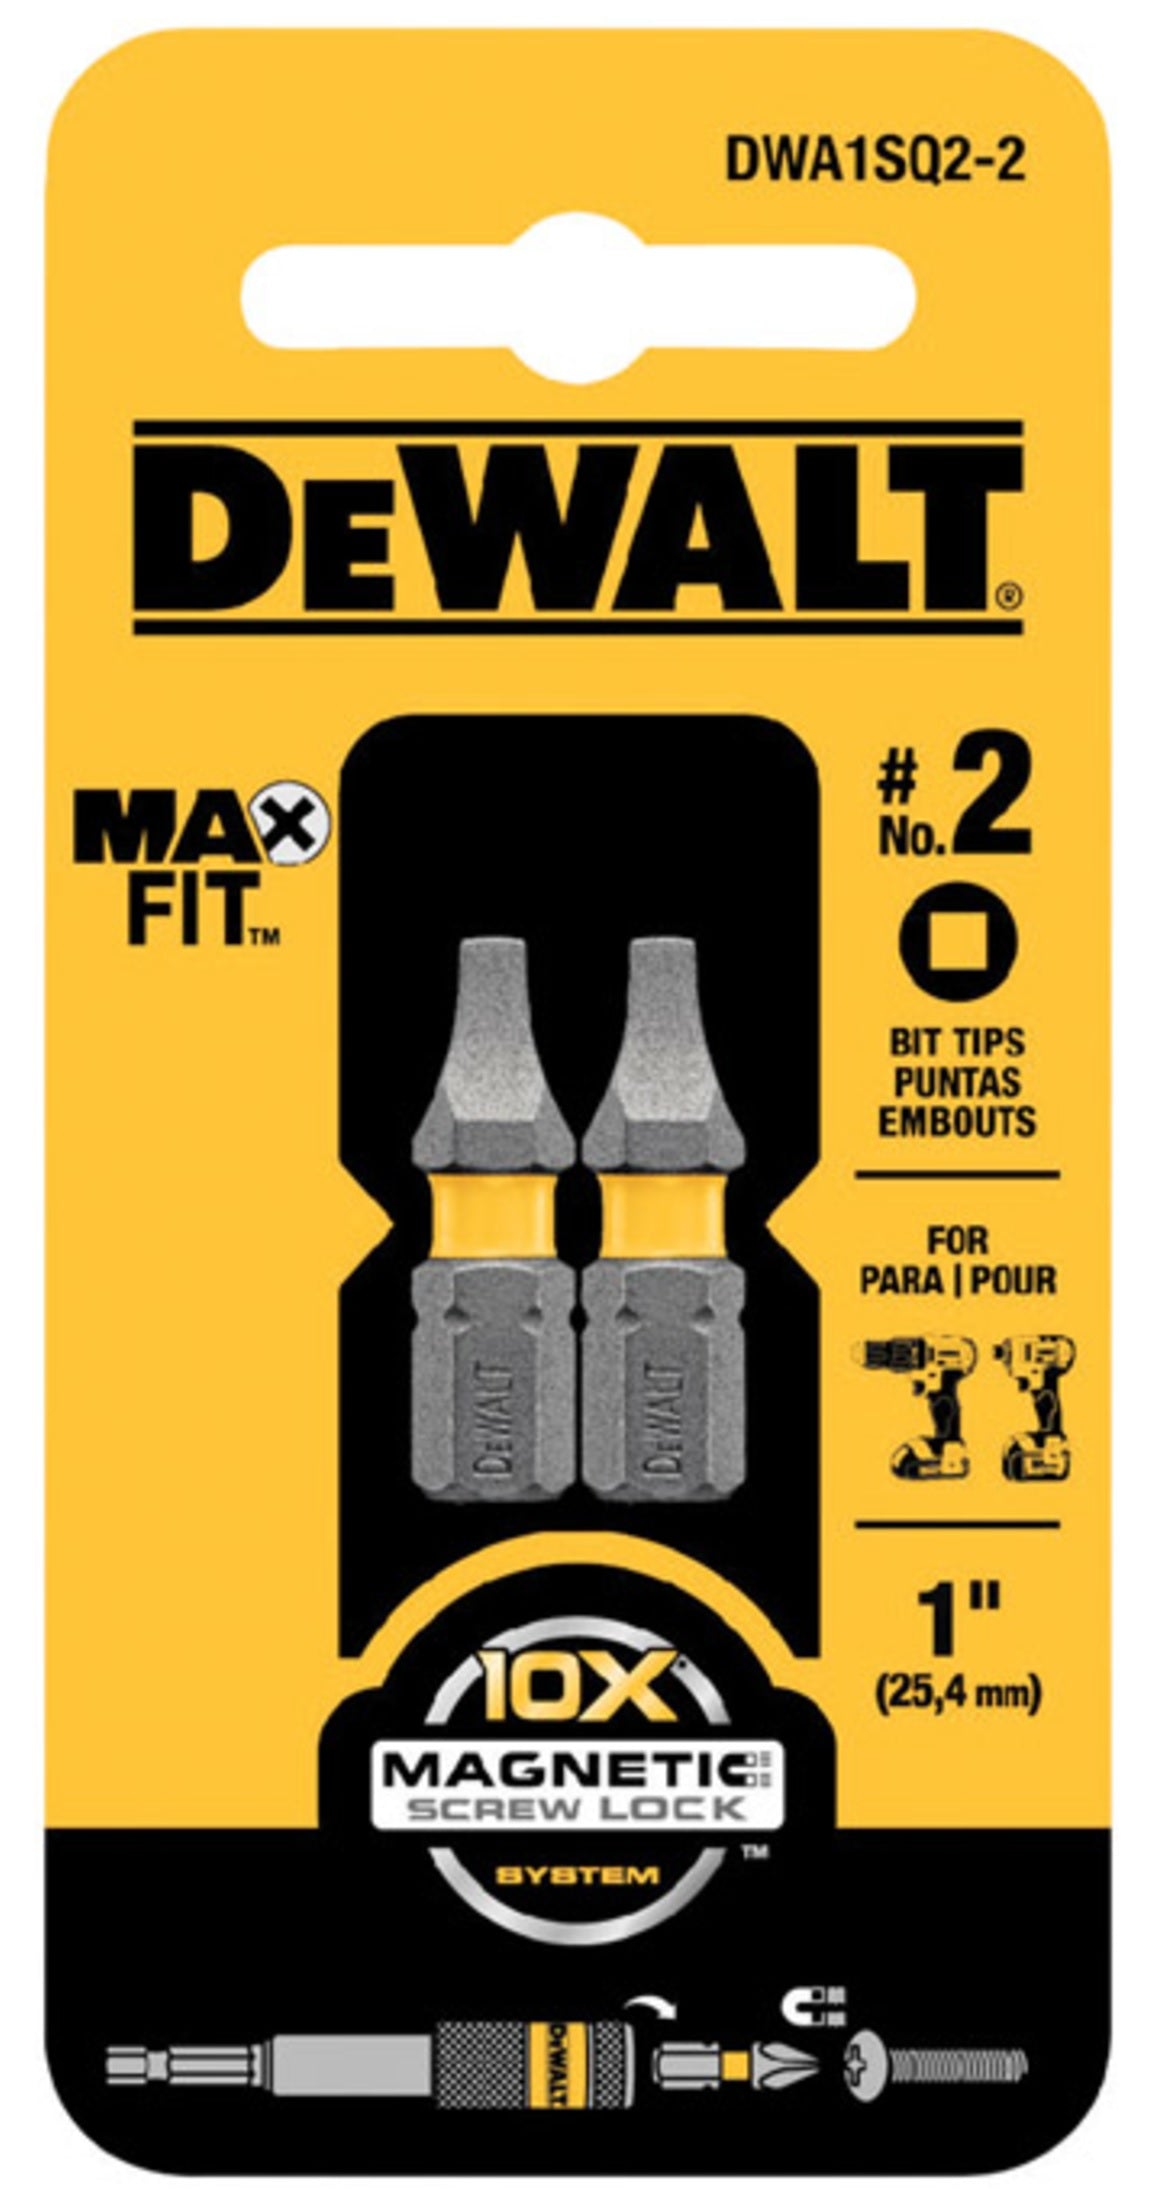 DeWalt DWA1SQ2-2 MAXFIT Square Insert Bits, #2 x 1"